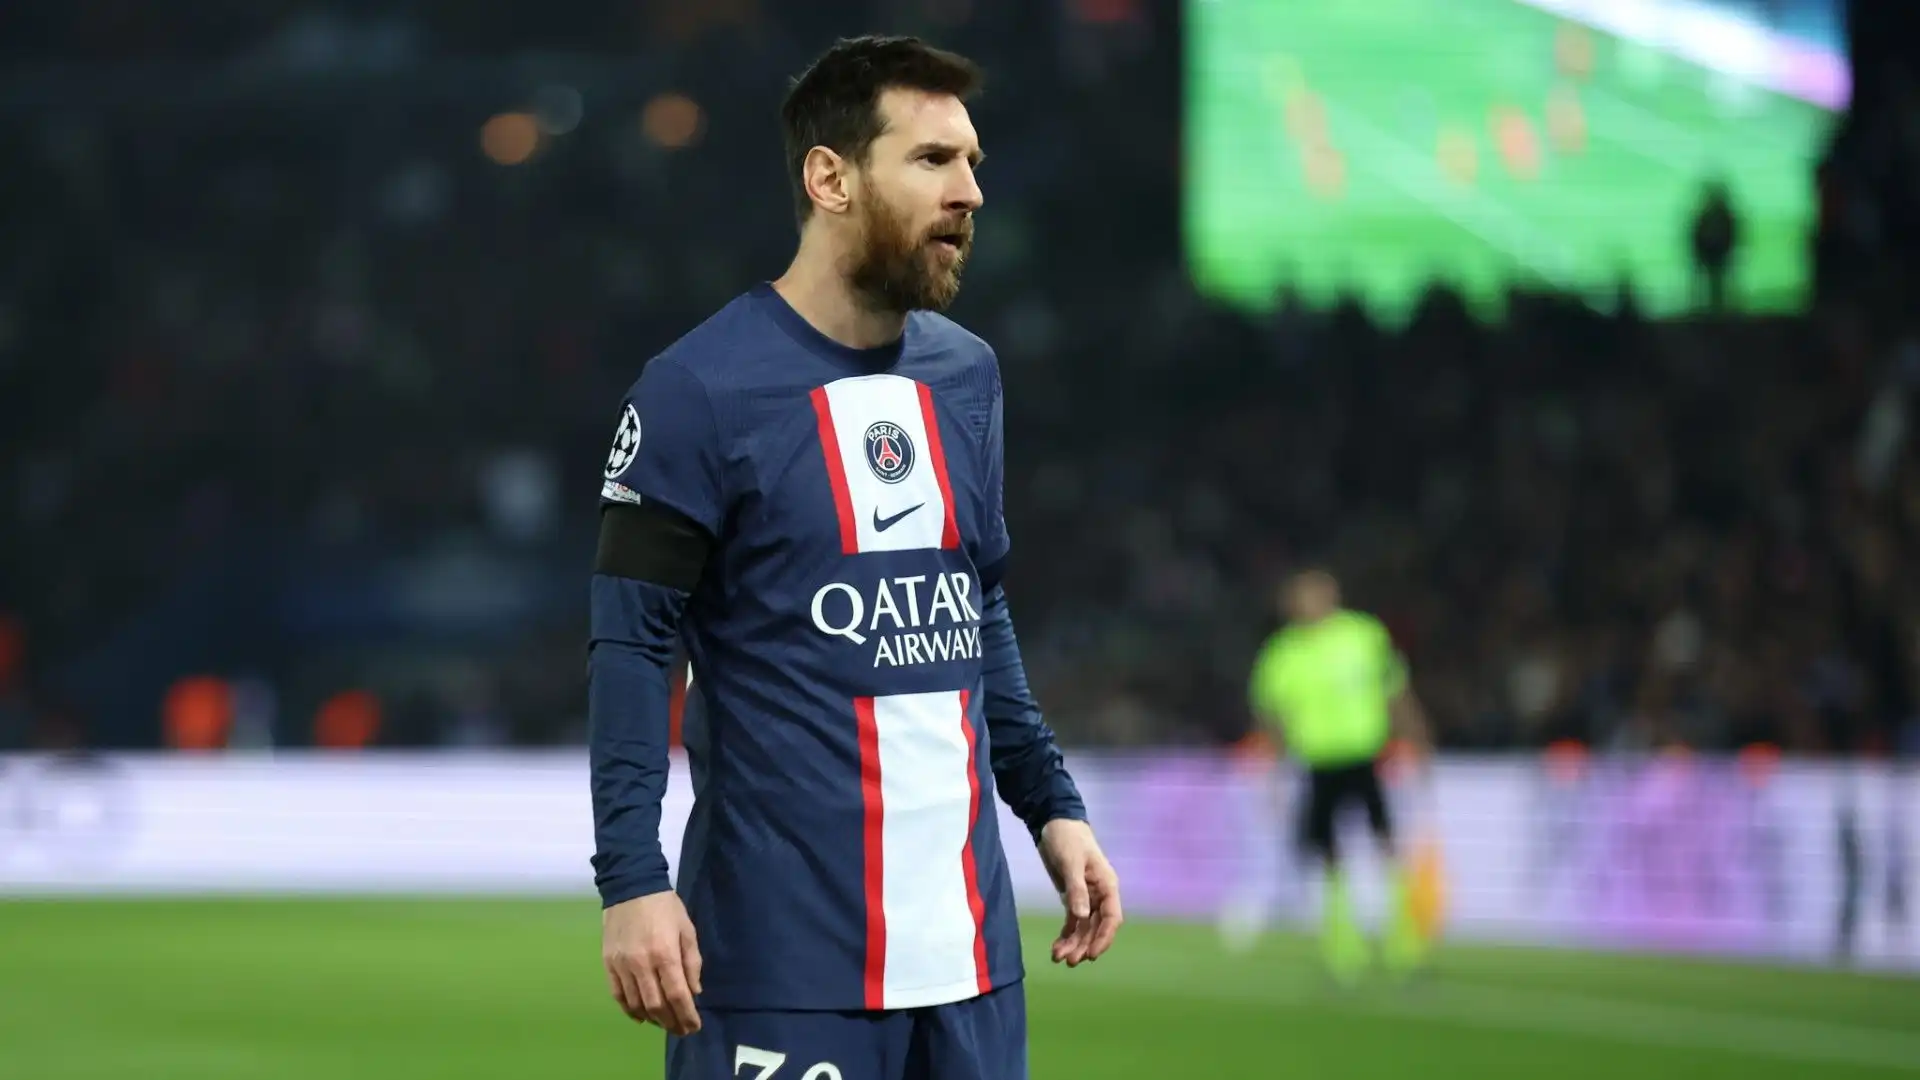 L'avventura di Lionel Messi al PSG sembra ormai finita